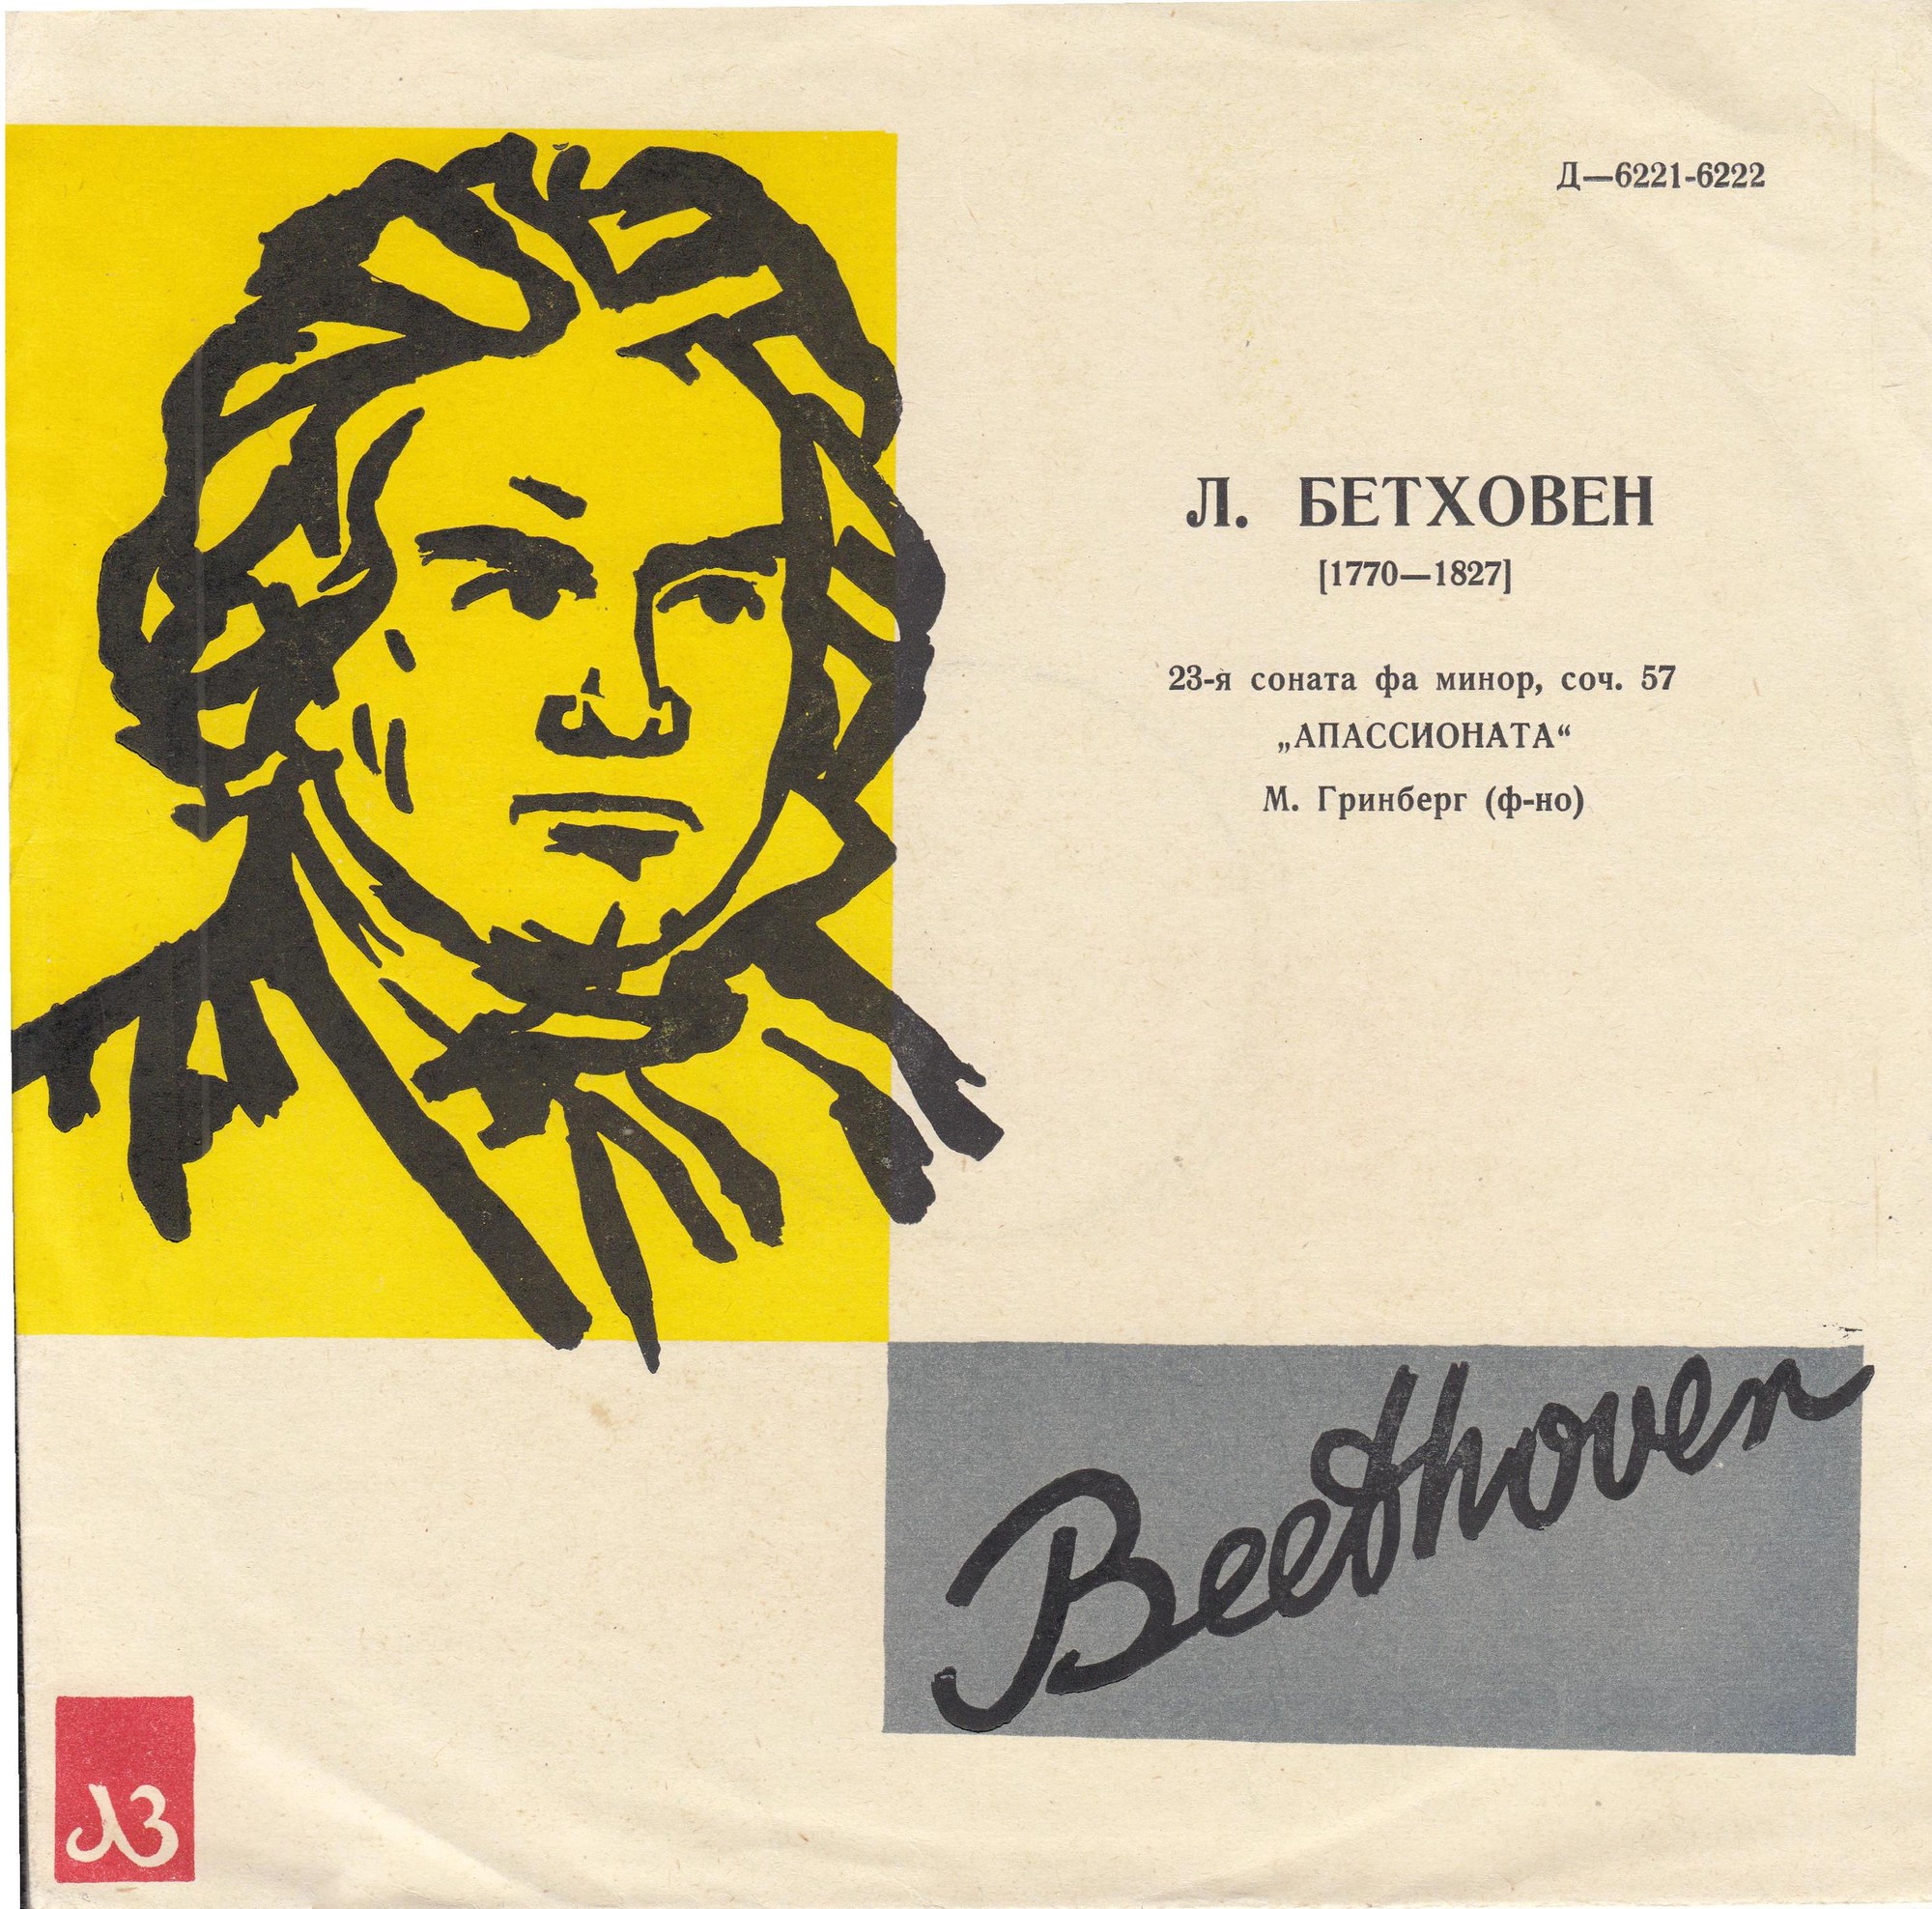 Л. Бетховен: Соната № 23 "Аппассионата" (М. Гринберг)